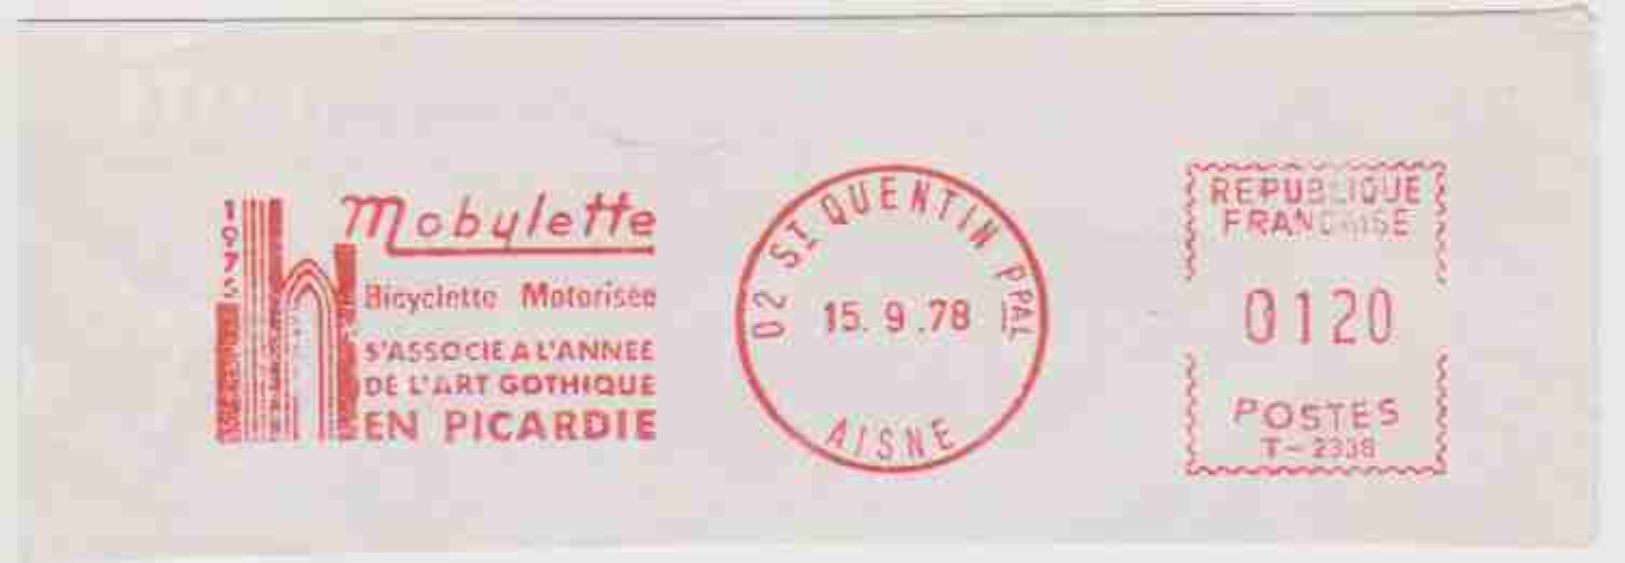 EMA Mobylette Bicyclette Motorisée S'associe A L'annee De L'art Gothique En Picardie - Saint-Quentin (02) - 1978 - EMA (Empreintes Machines à Affranchir)